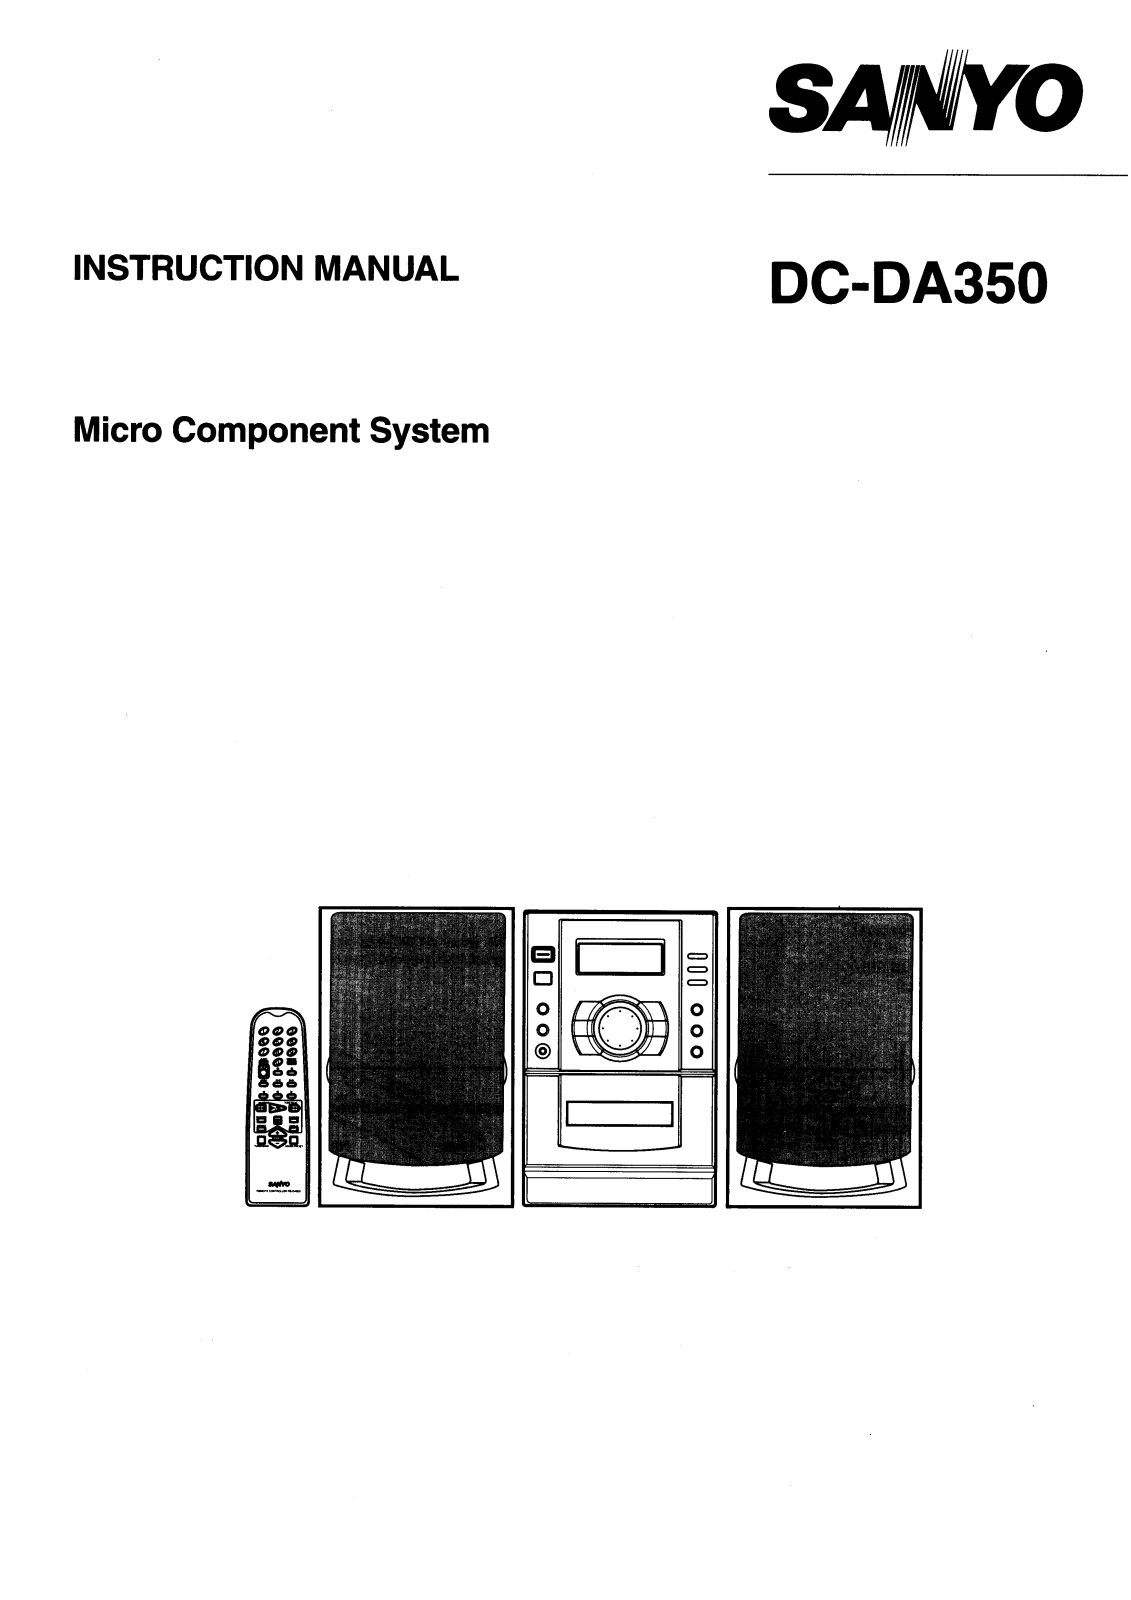 Sanyo DC-DA350 Instruction Manual